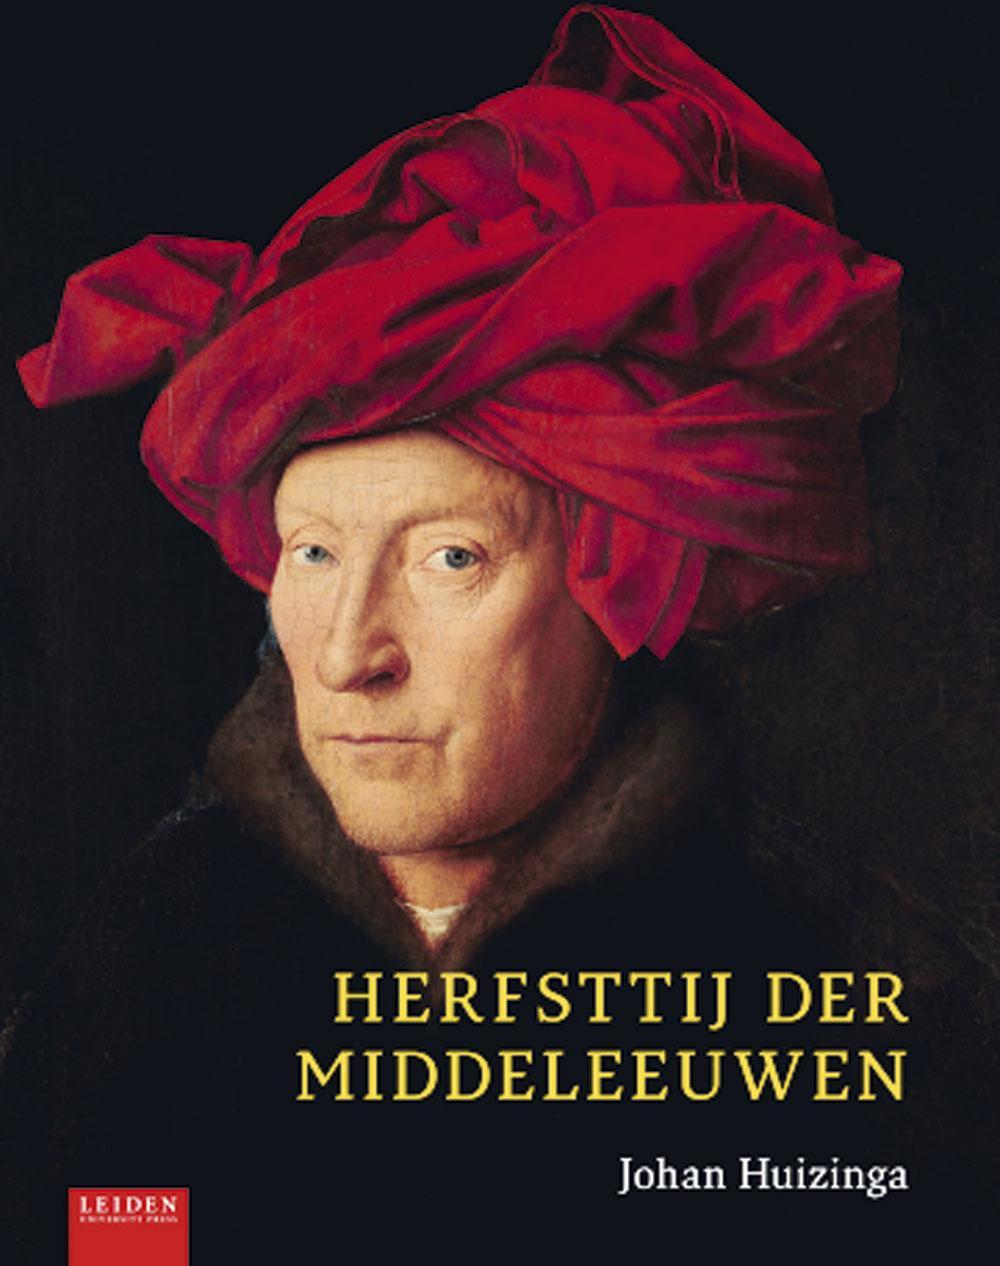 100 jaar 'Herfsttij der middeleeuwen': het standaardwerk van Johan Huizinga